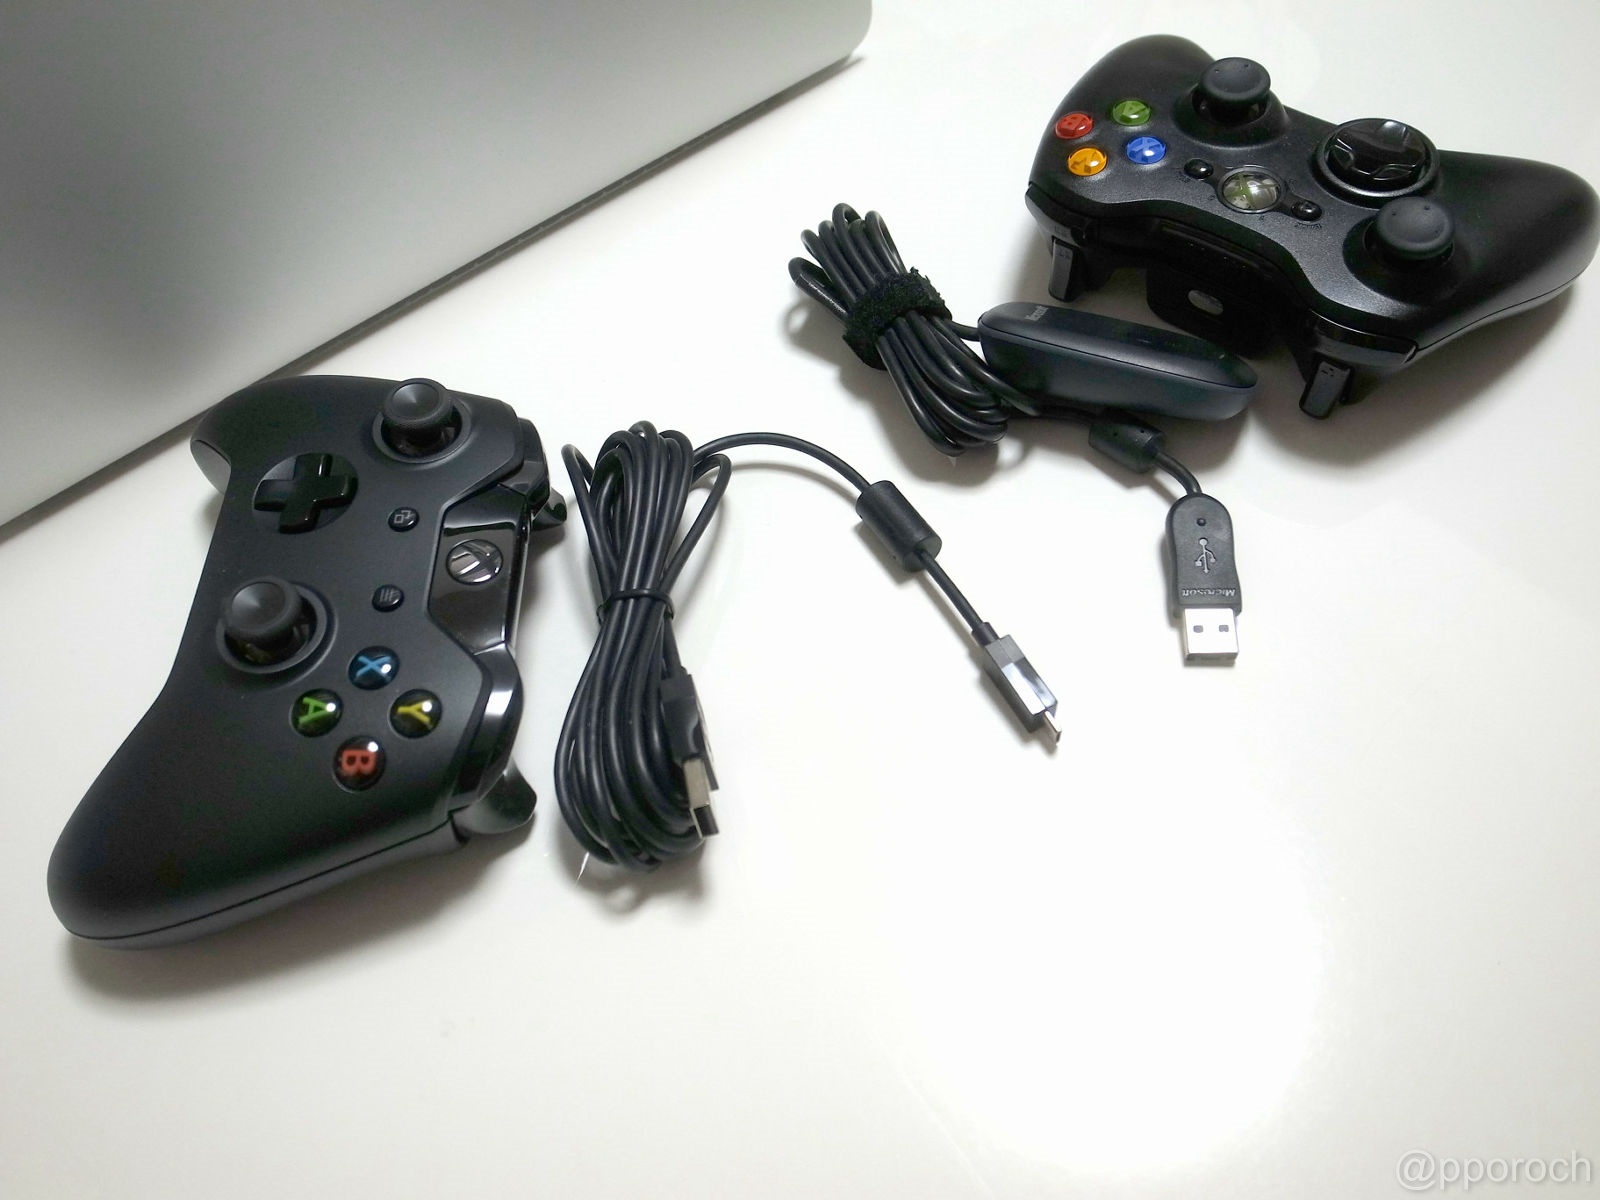 Dqx Windows用ケーブル付 Xbox Oneコントローラを購入 Xbox 360用と比べてみた チラシのすきま